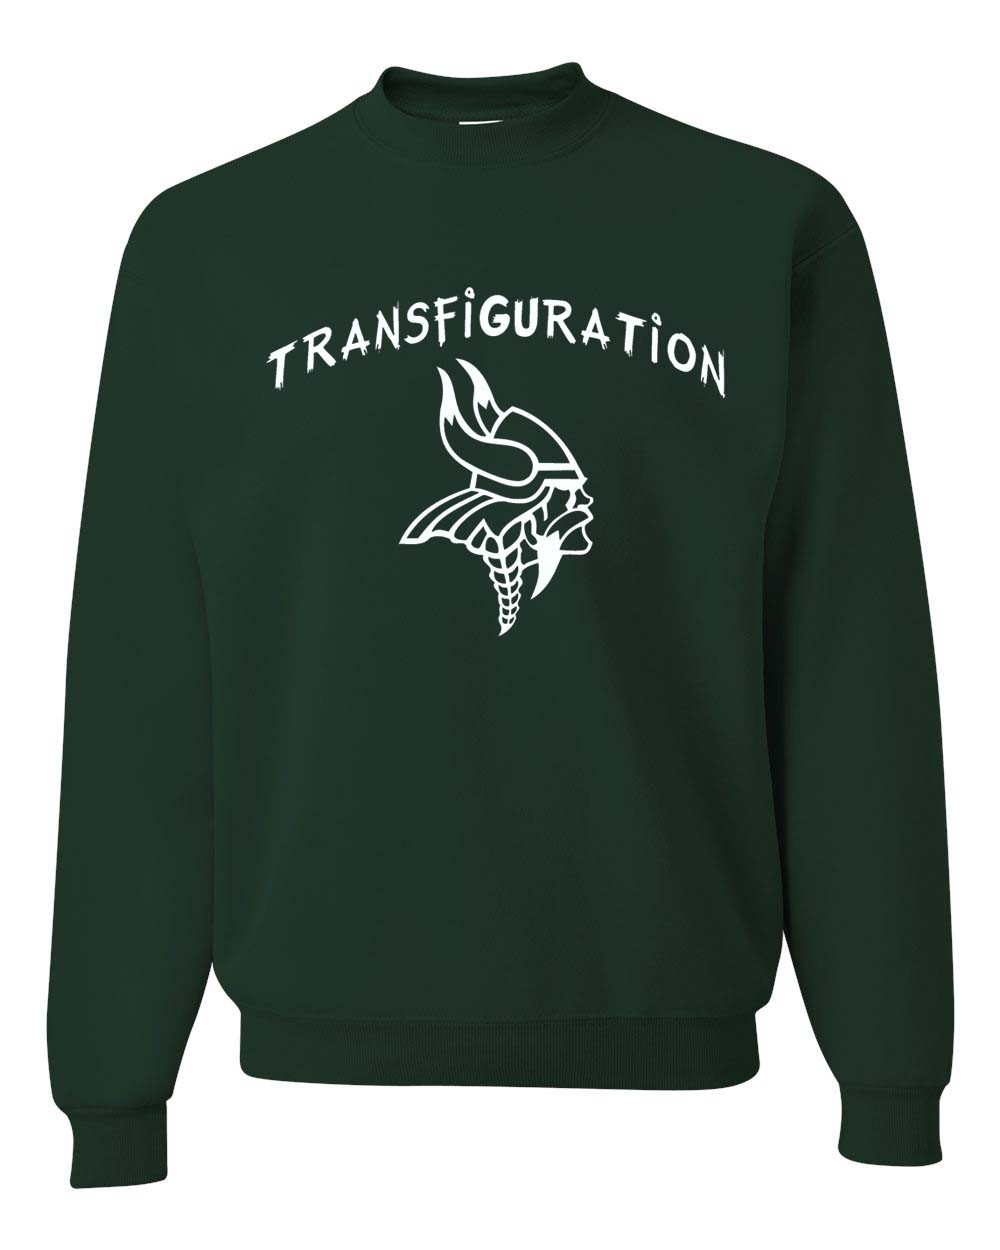 Transfiguration Gym Sweatshirt w/ School Logo